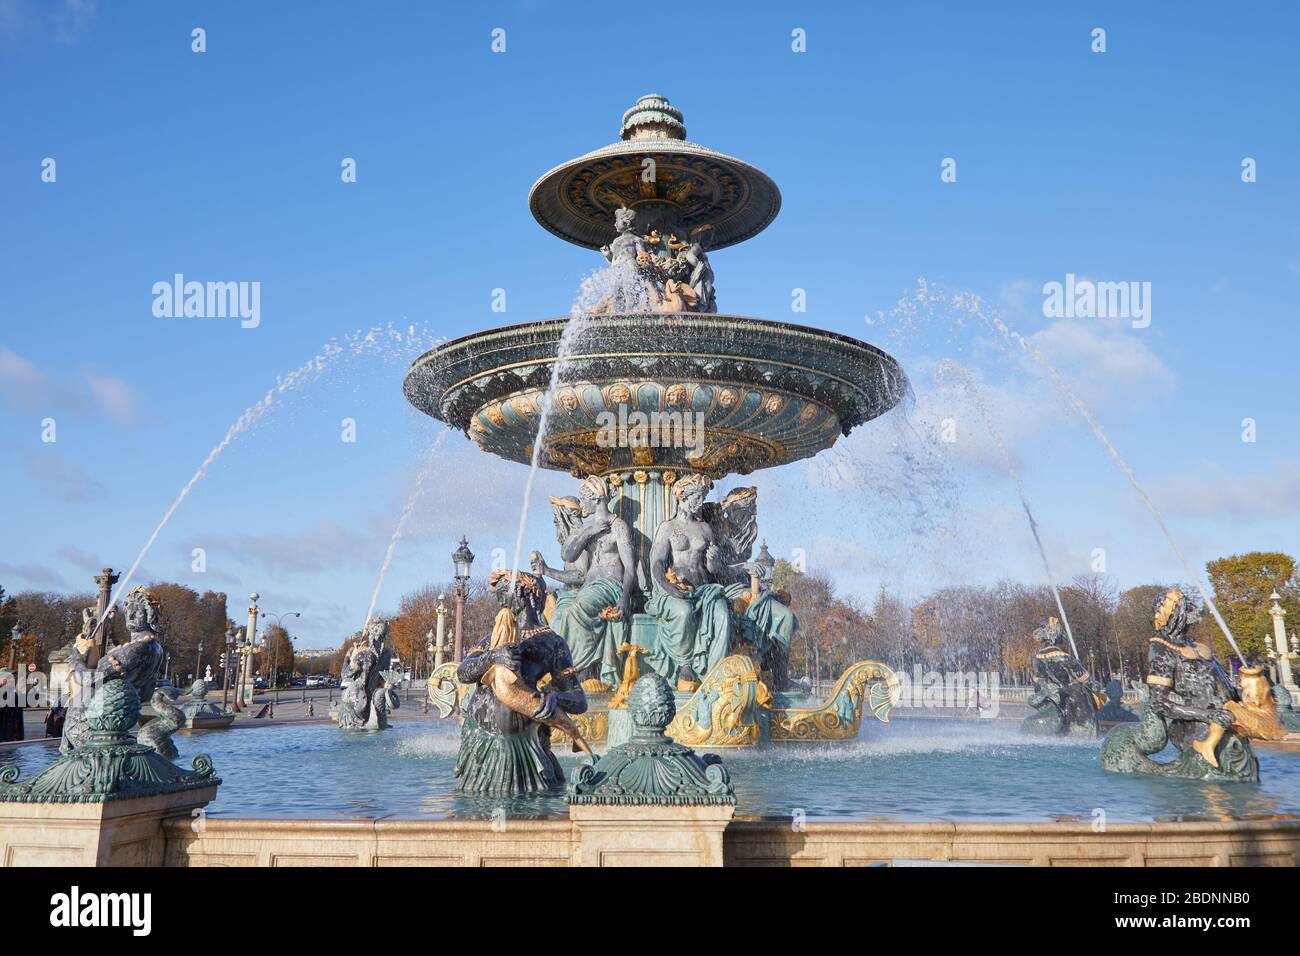 La fontaine de la place de la Concorde dans un ciel bleu ensoleillé à Paris Banque D'Images